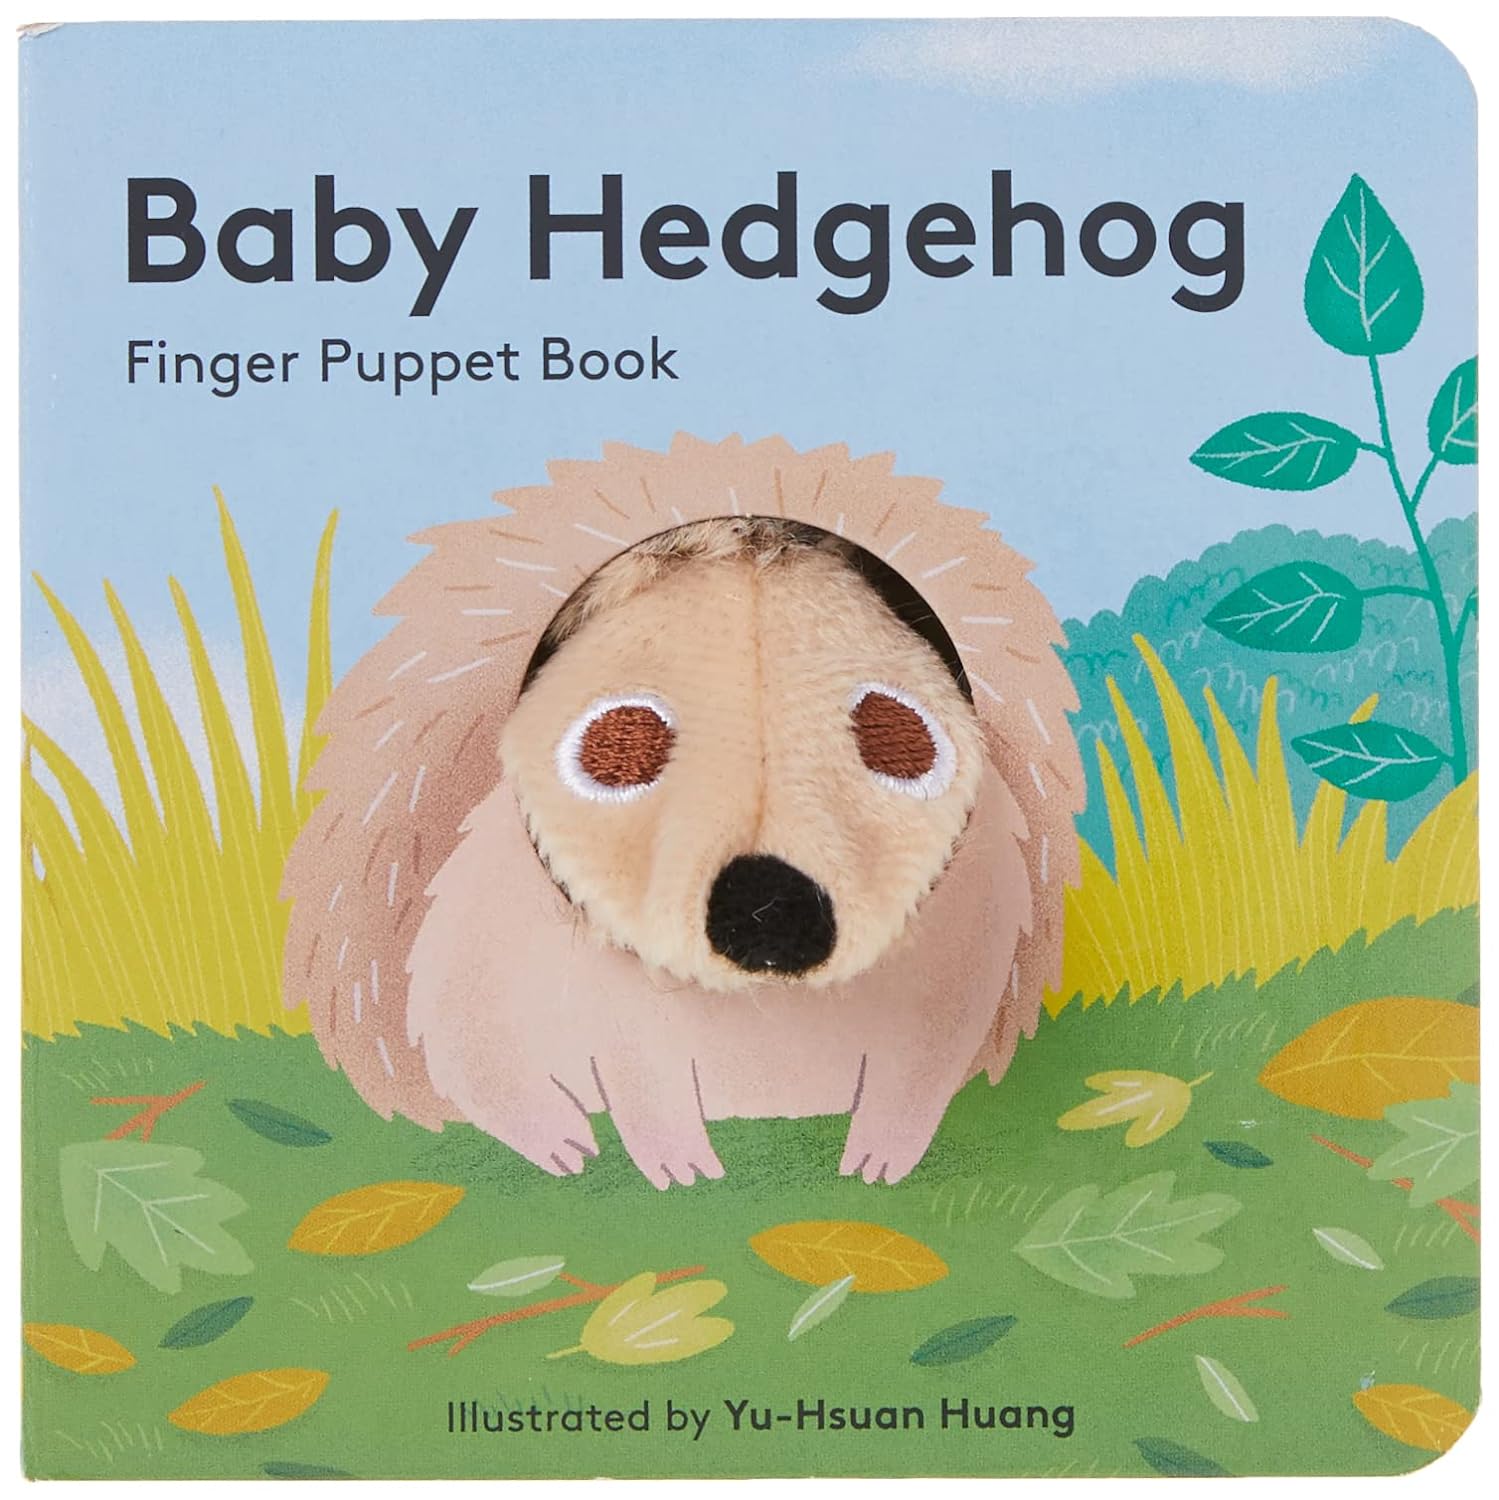 "Baby Hedgehog" Finger Puppet Book